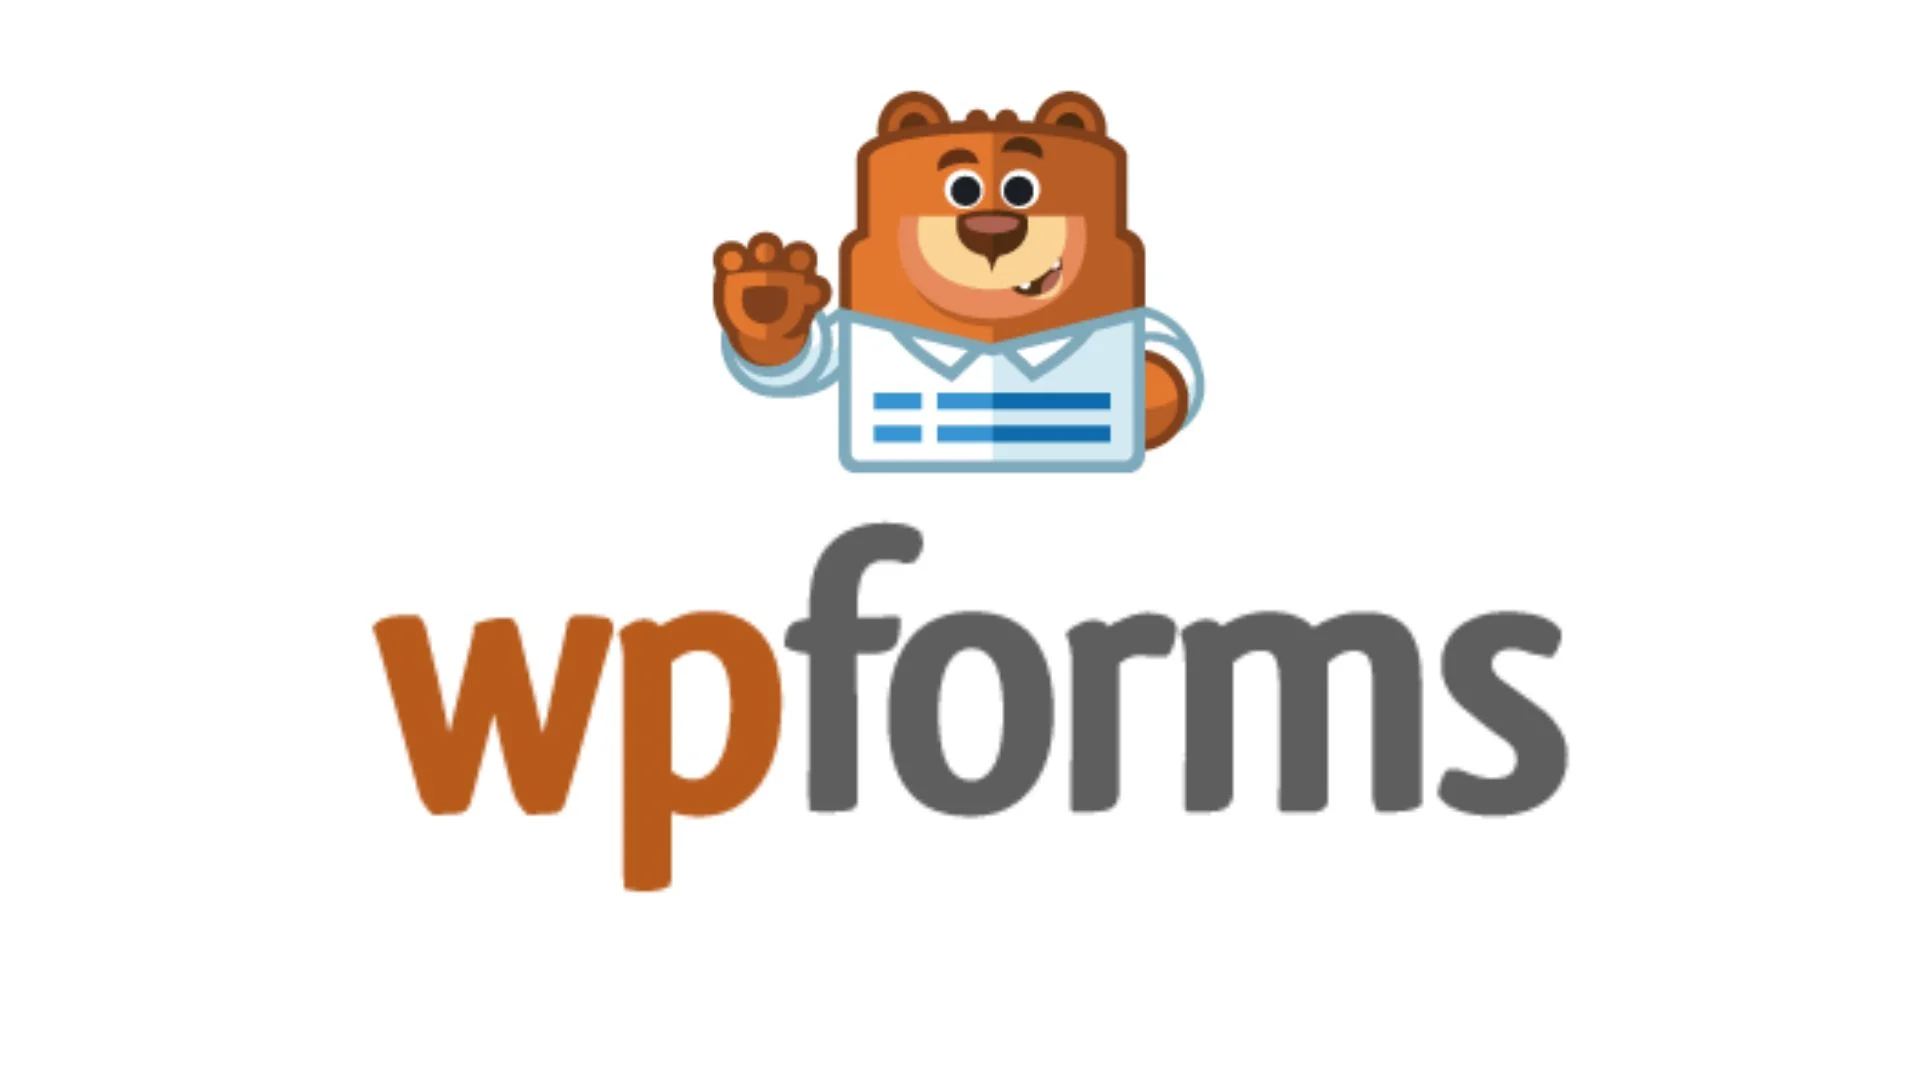 Плагин WPForms